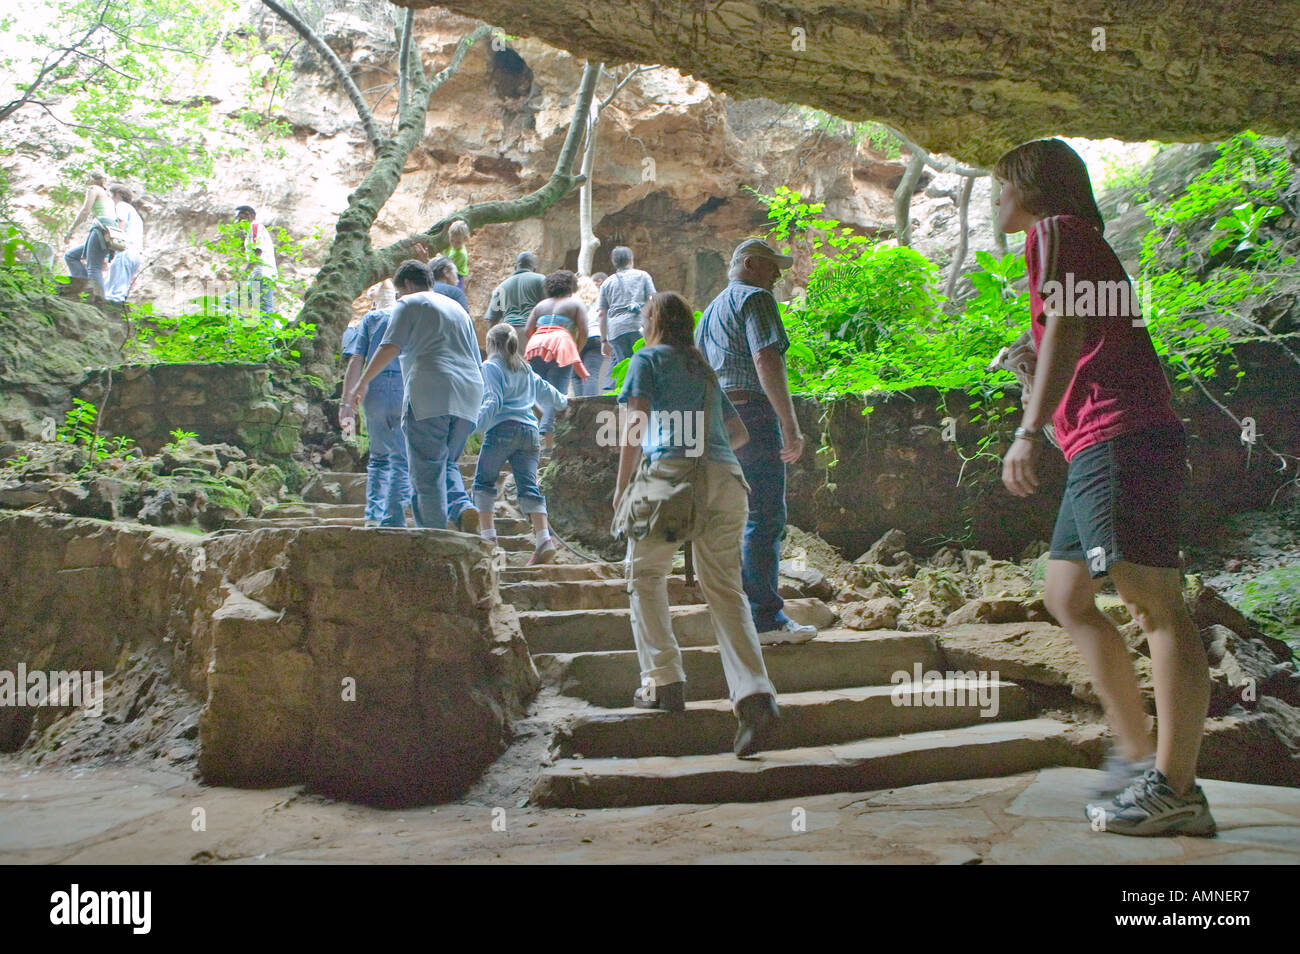 Reise des Mannes wird symbolisiert, wie Touristen aus Höhlen am Cradle of Humankind Weltkulturerbe in der Provinz Gauteng Fuß Stockfoto